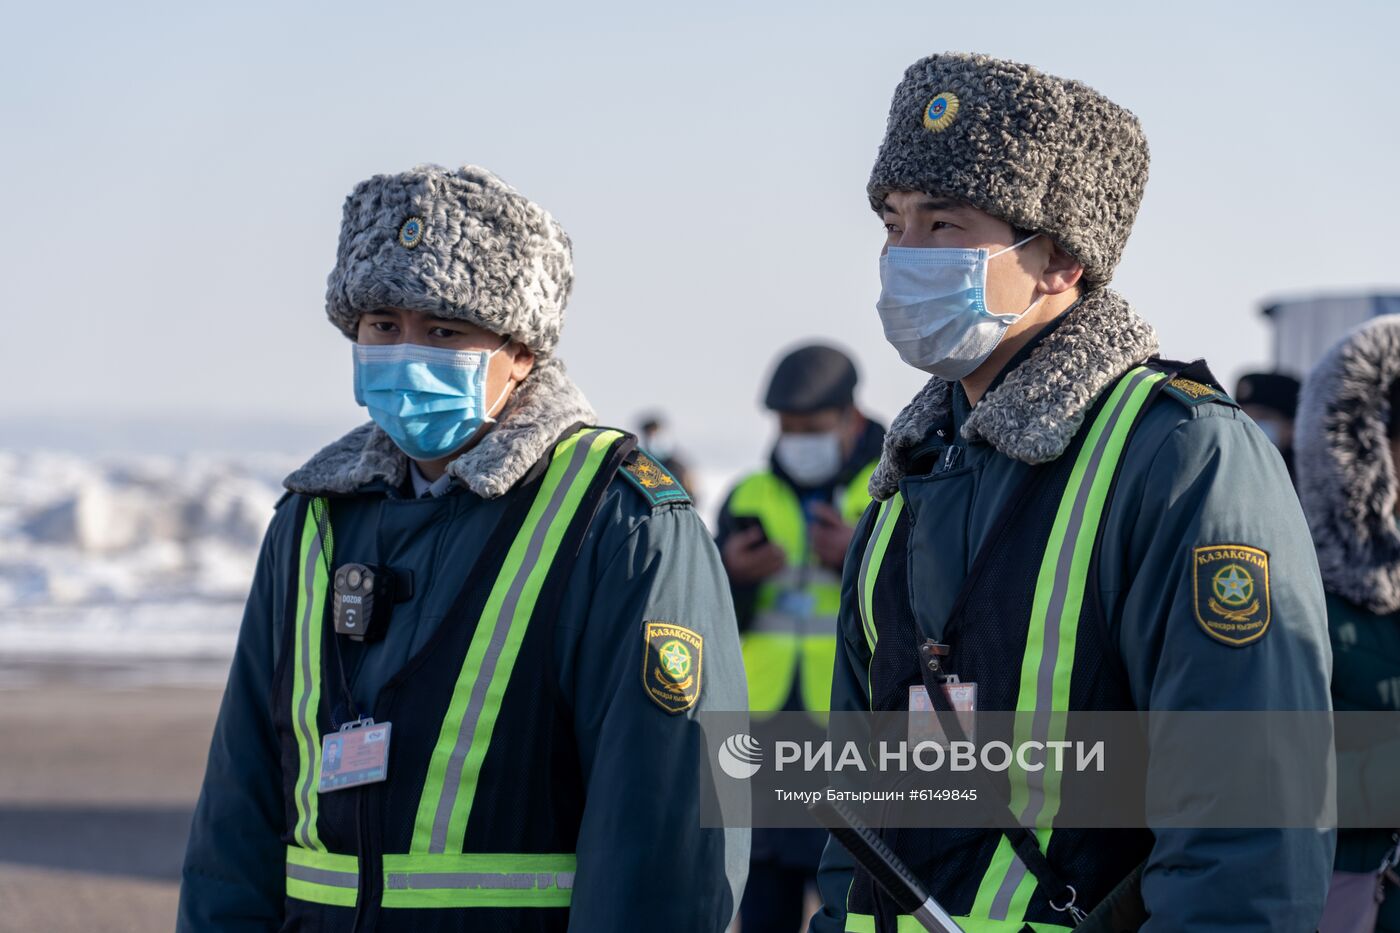 Прилет китайских туристов с Хайнаня в Алма-Ату и учения служб аэропорта по подготовке возможному прибытию инфицированных коронавирусом